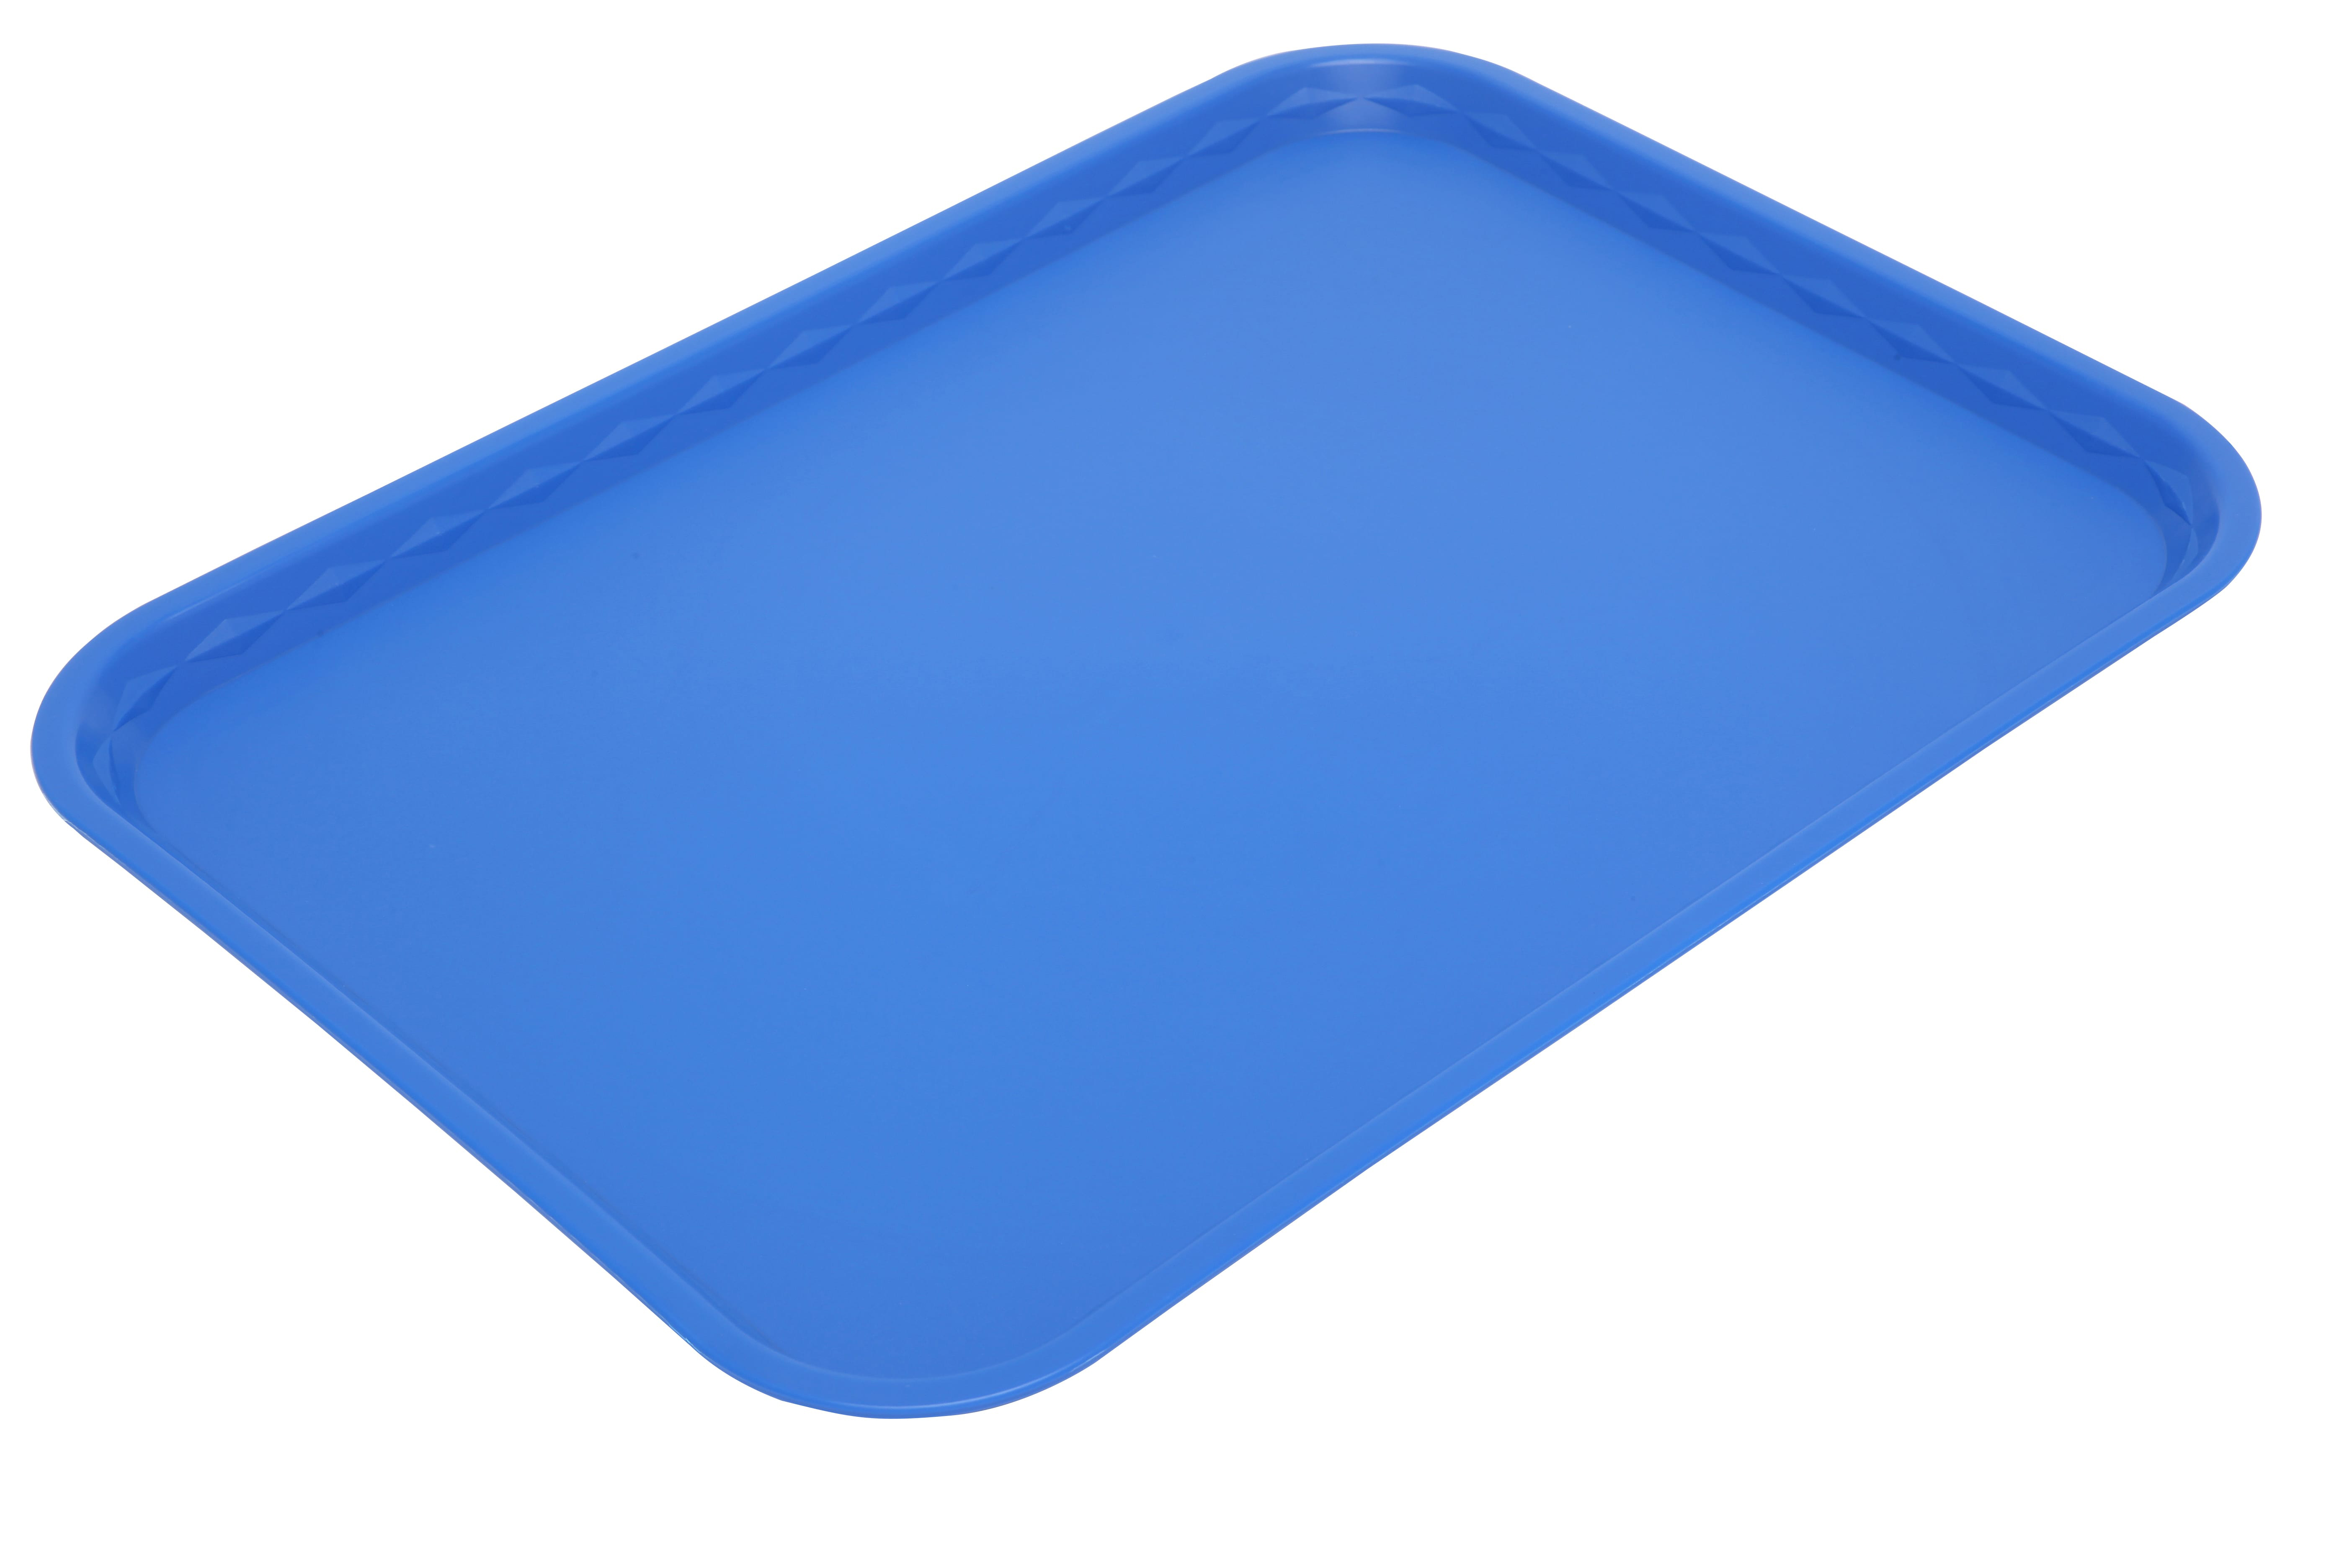 Tray Polypropylene Flat 41 x 30cm Blue - Each